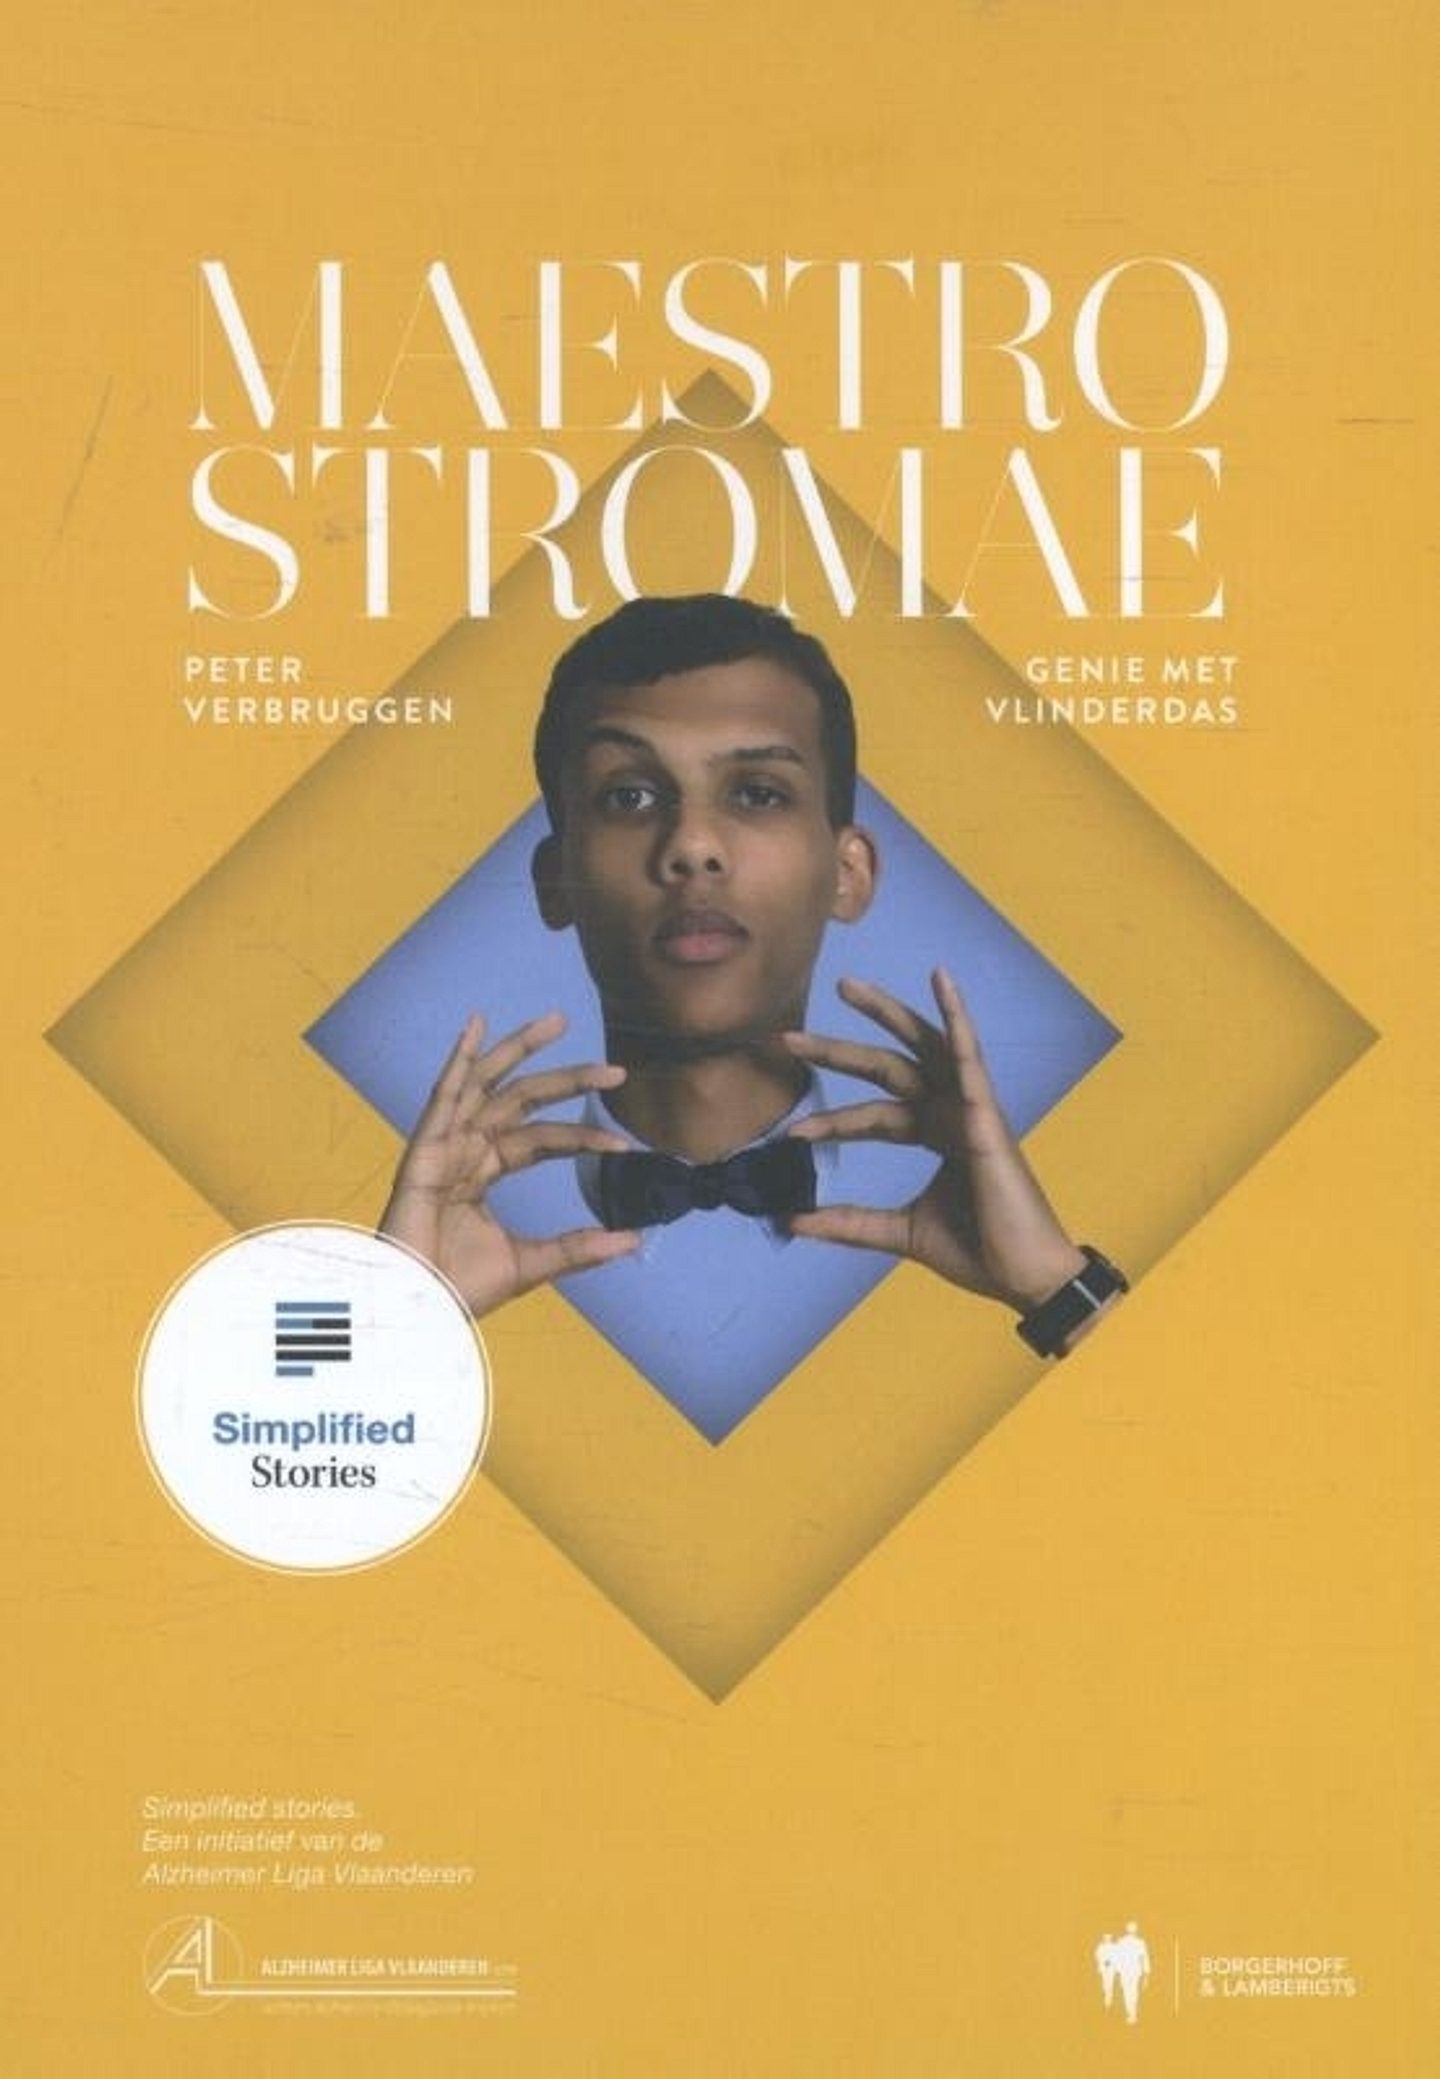 Maestro Stromae